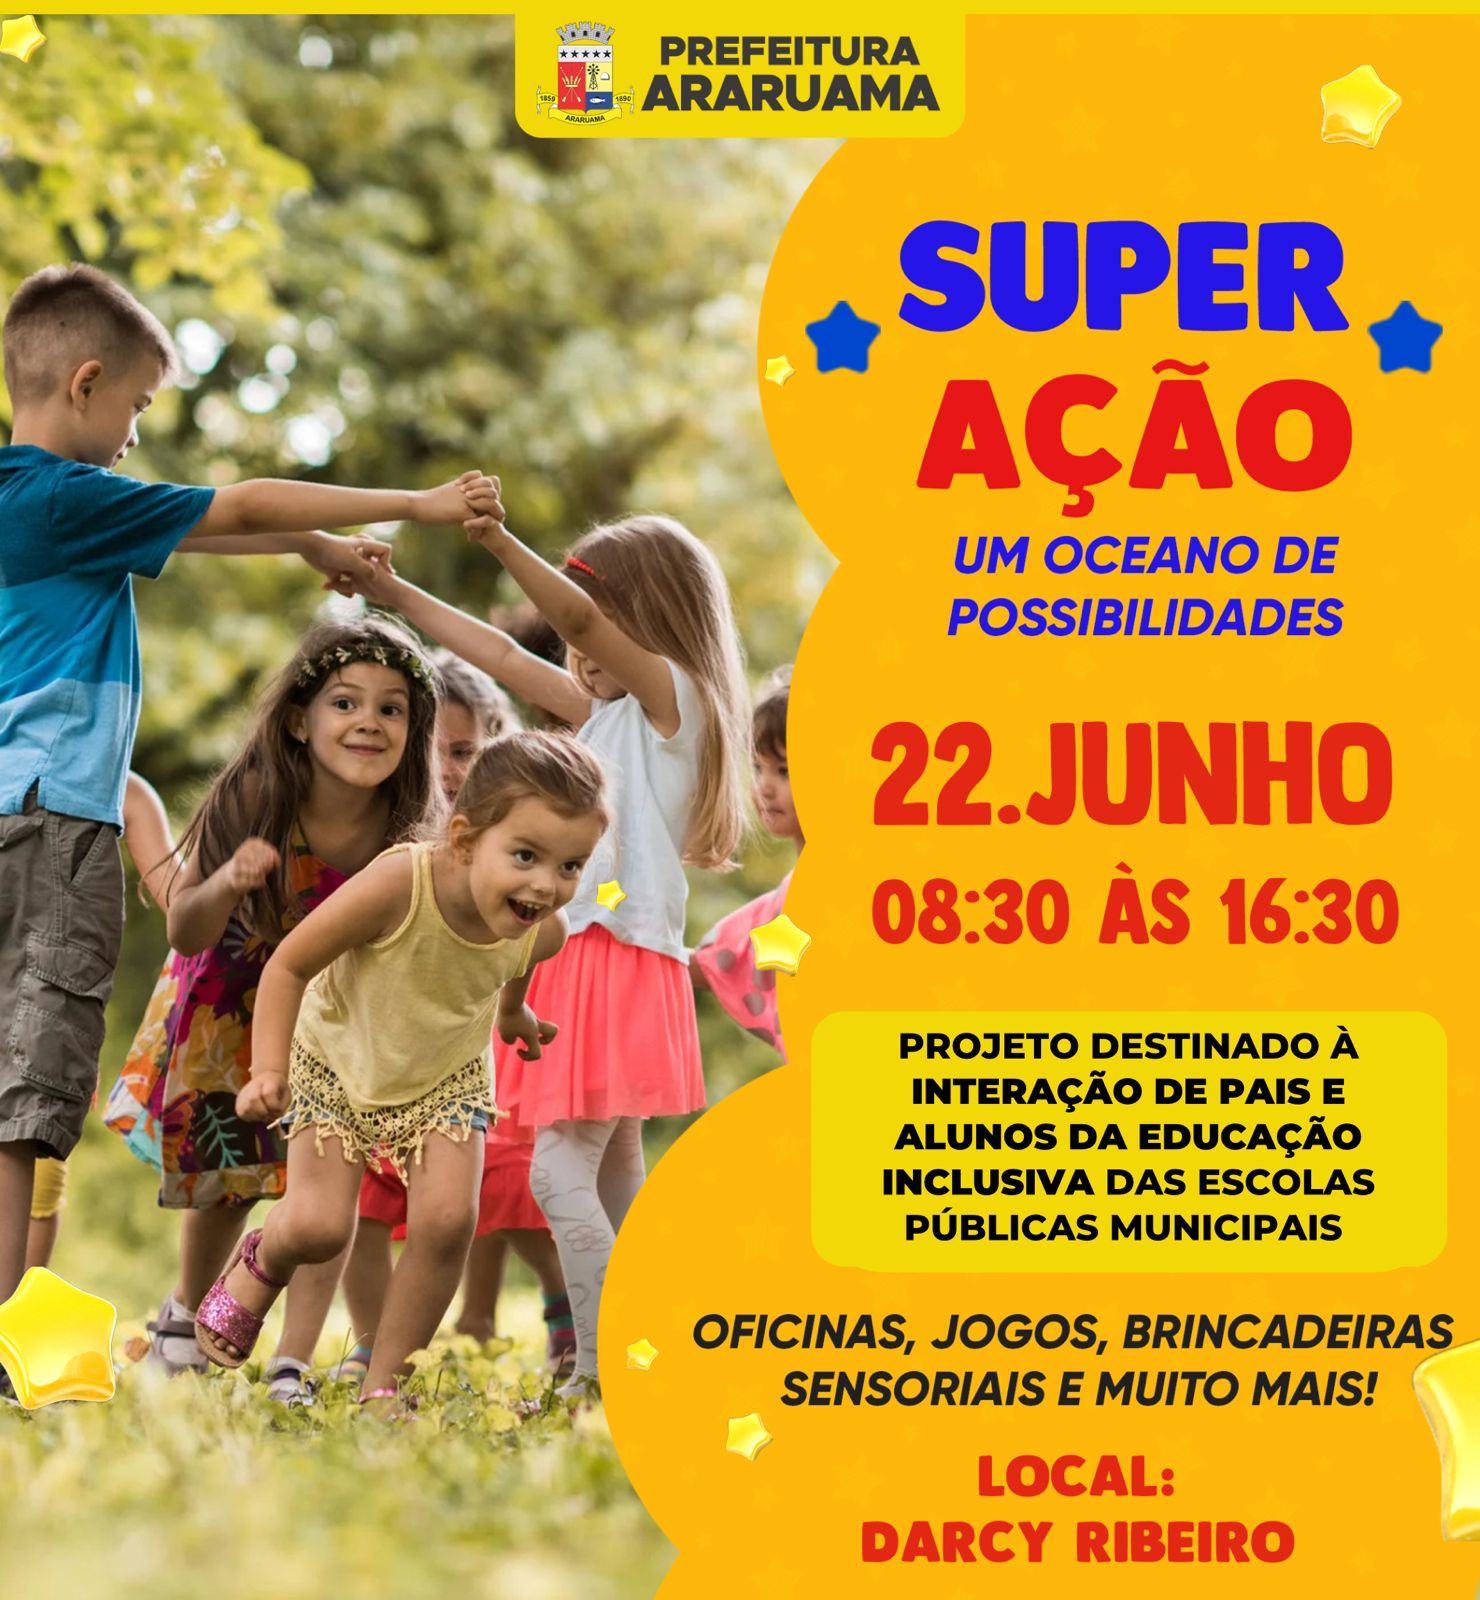 Jogos sensoriais e esportivos vão marcar mais uma edição do projeto “Super Ação” da Prefeitura de Araruama